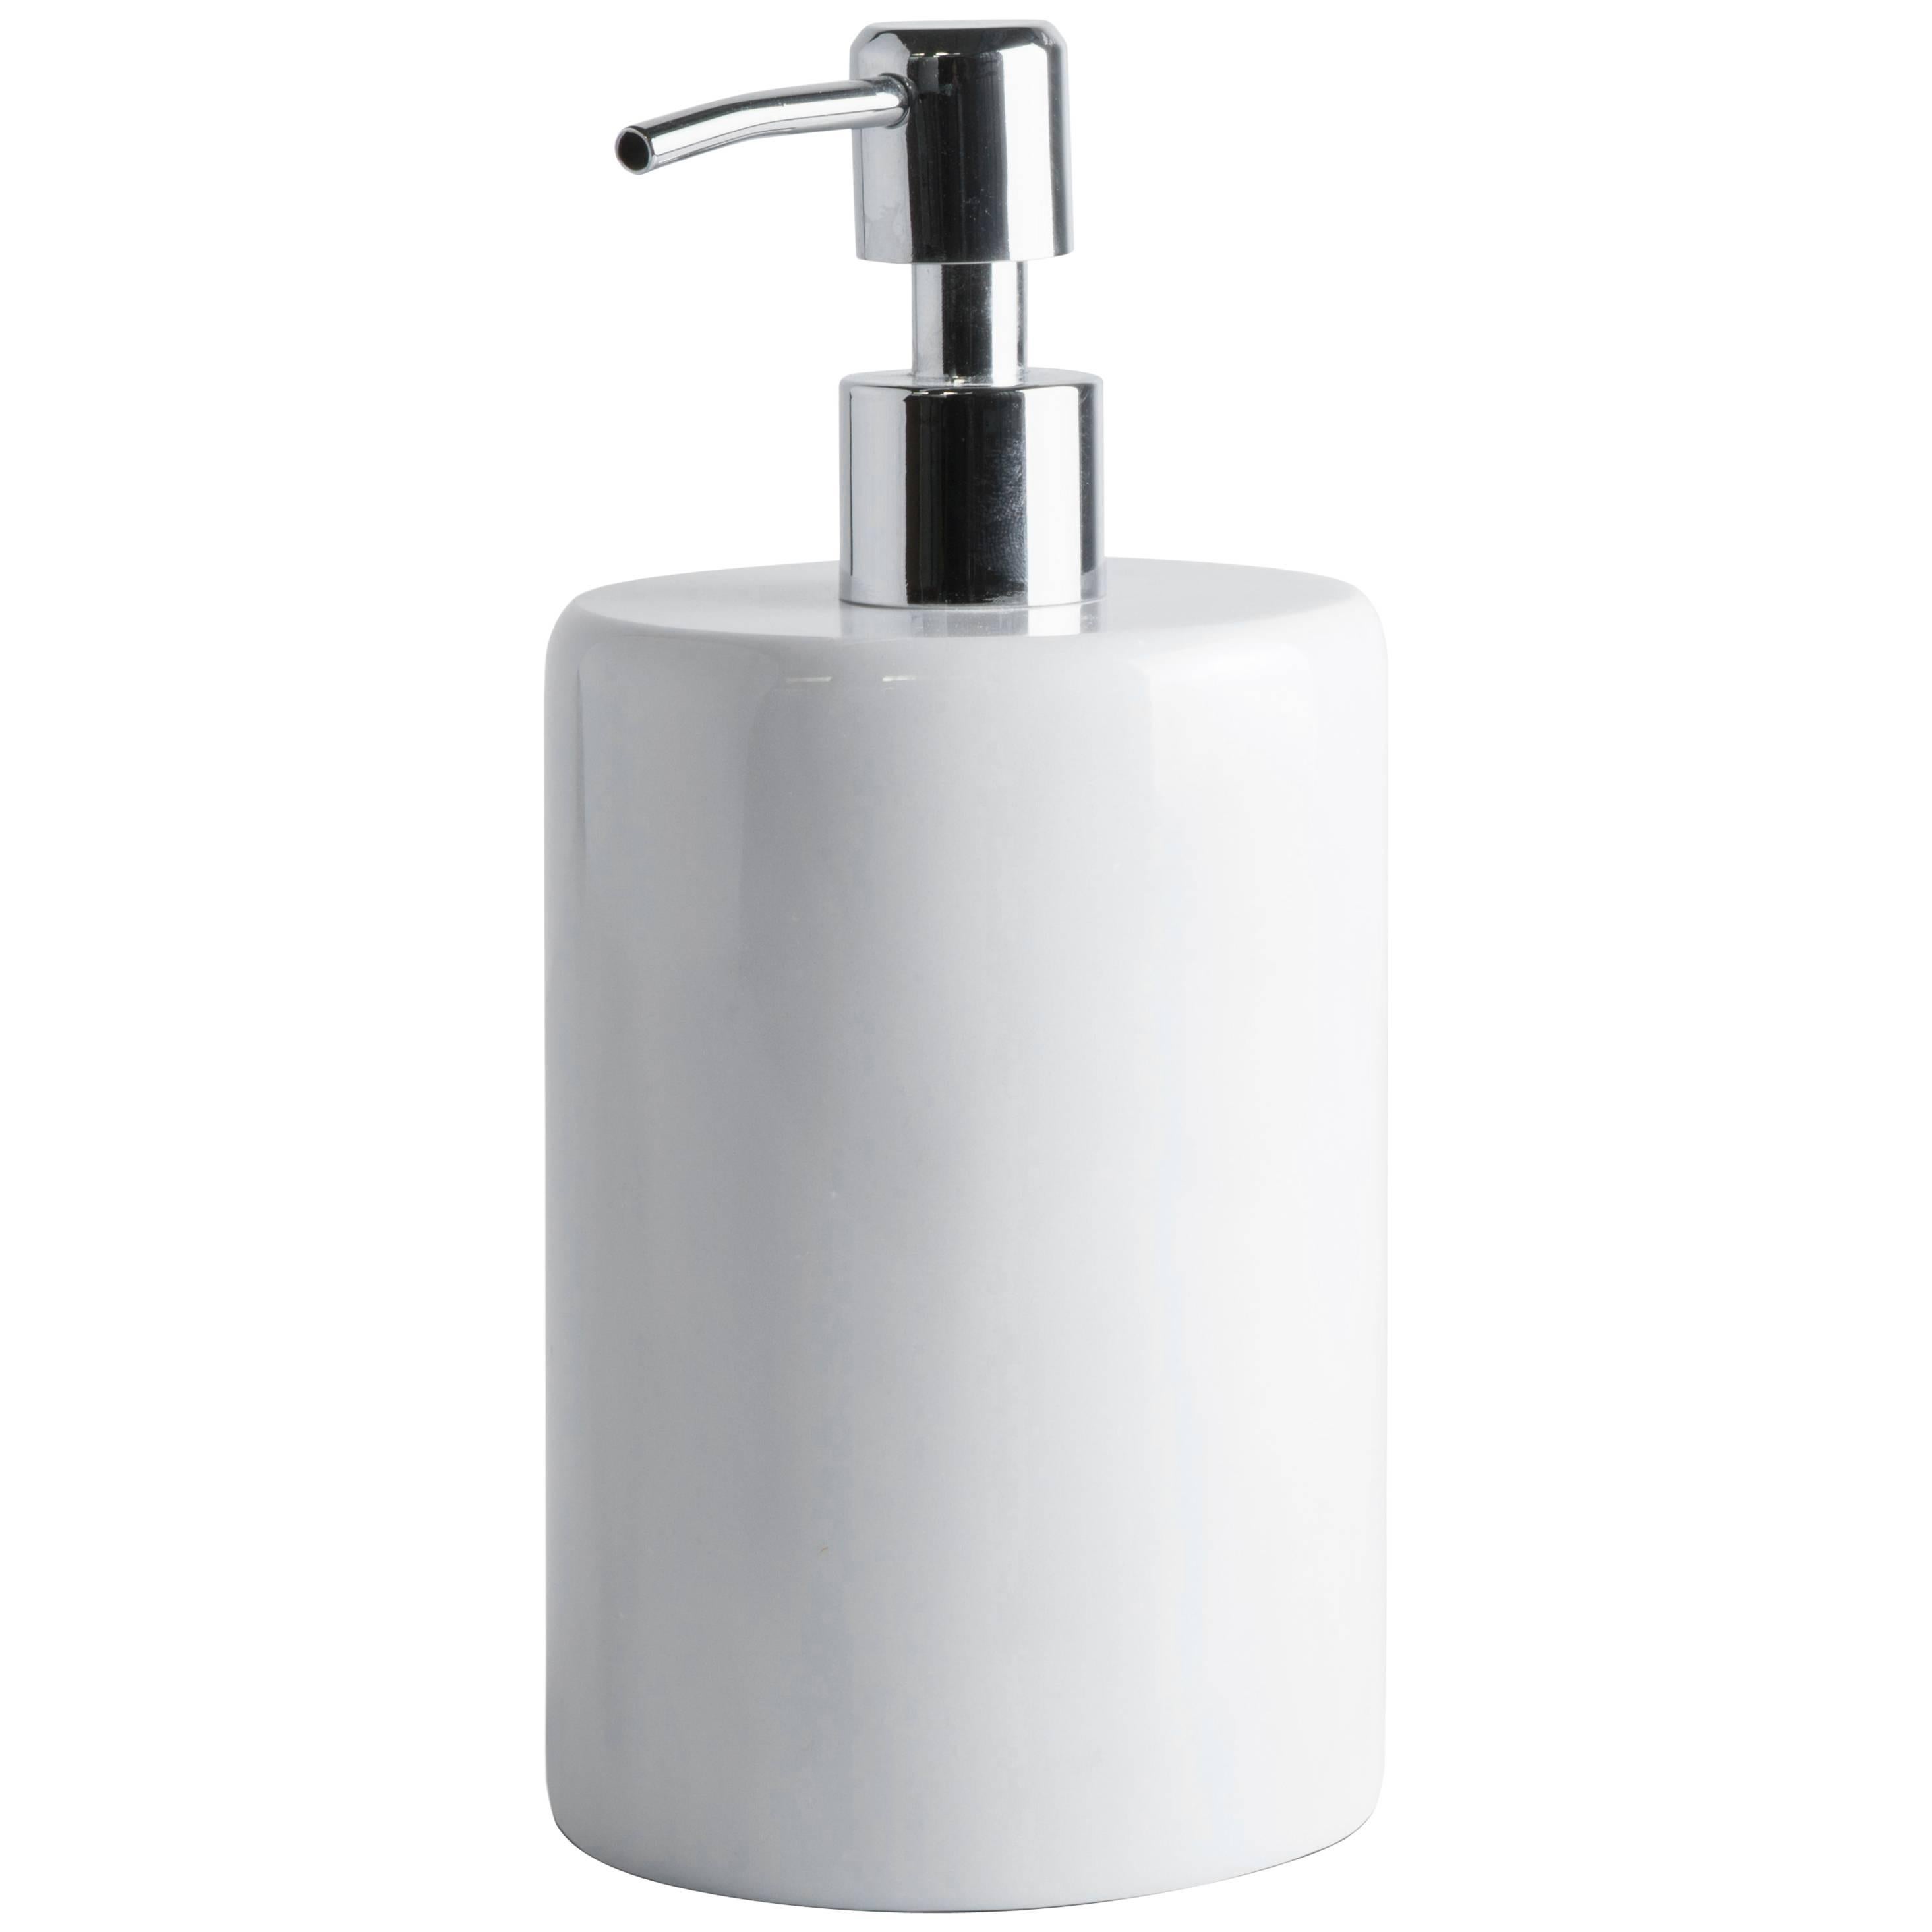 Handmade Rounded Soap Dispenser in White Carrara Marble